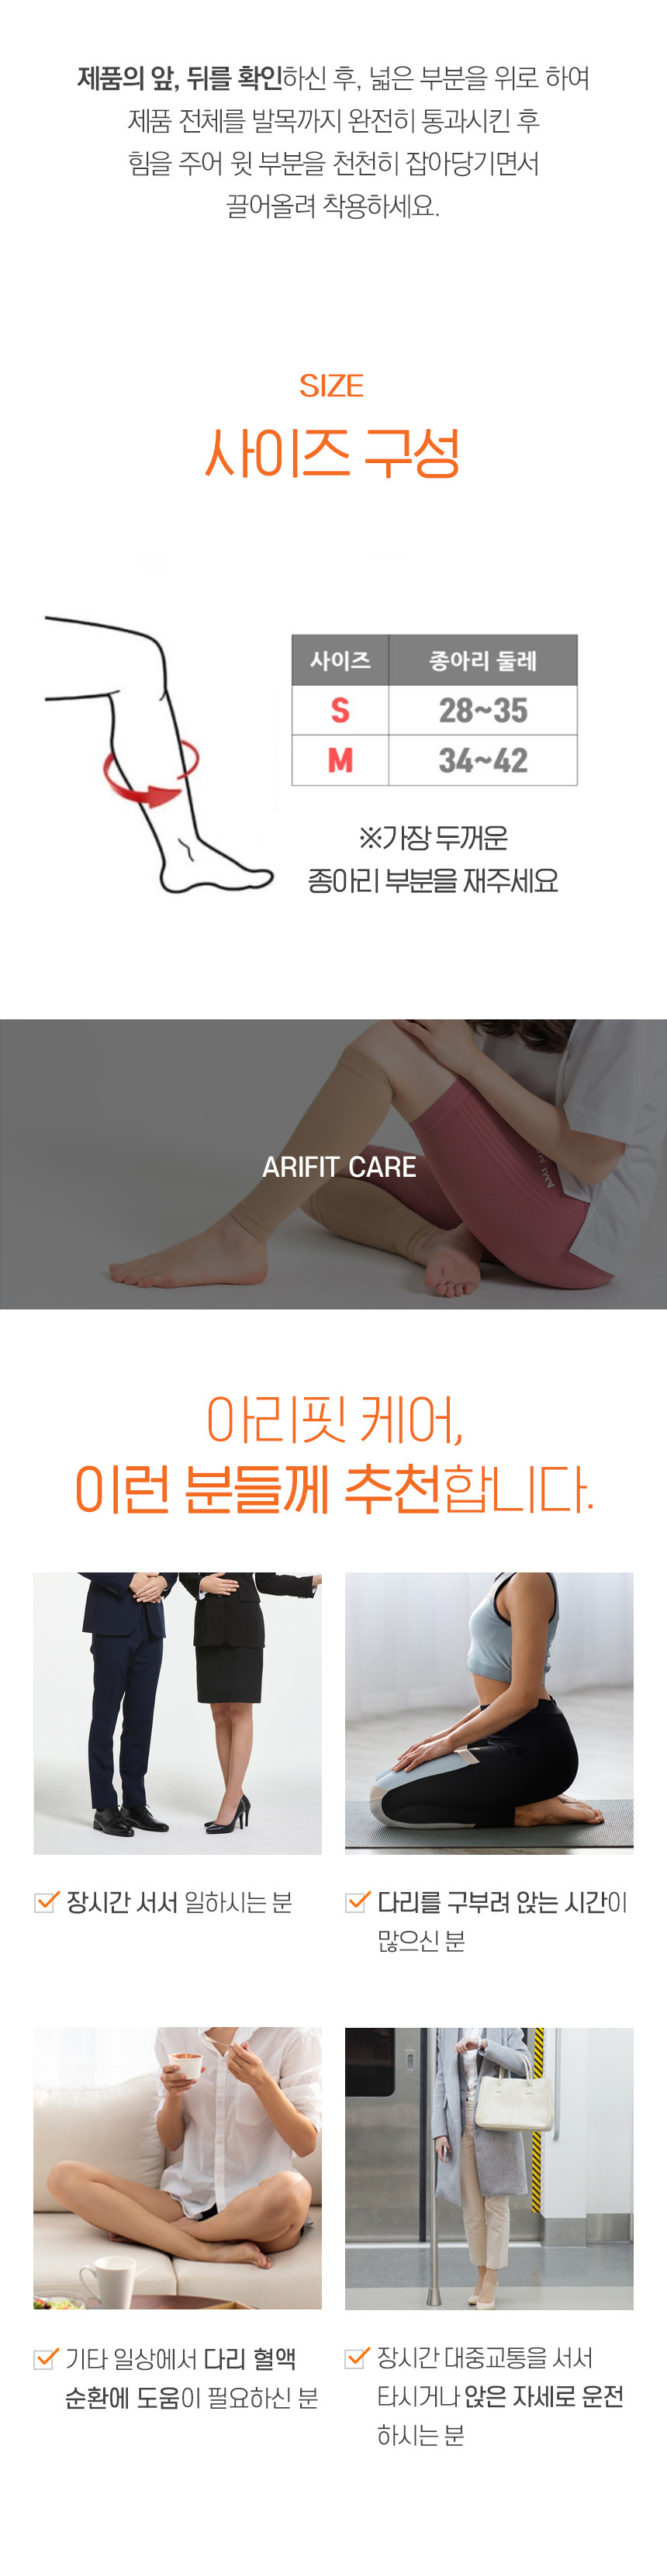 韓國食品-[Lycra] Medical Compression Stockings (S)